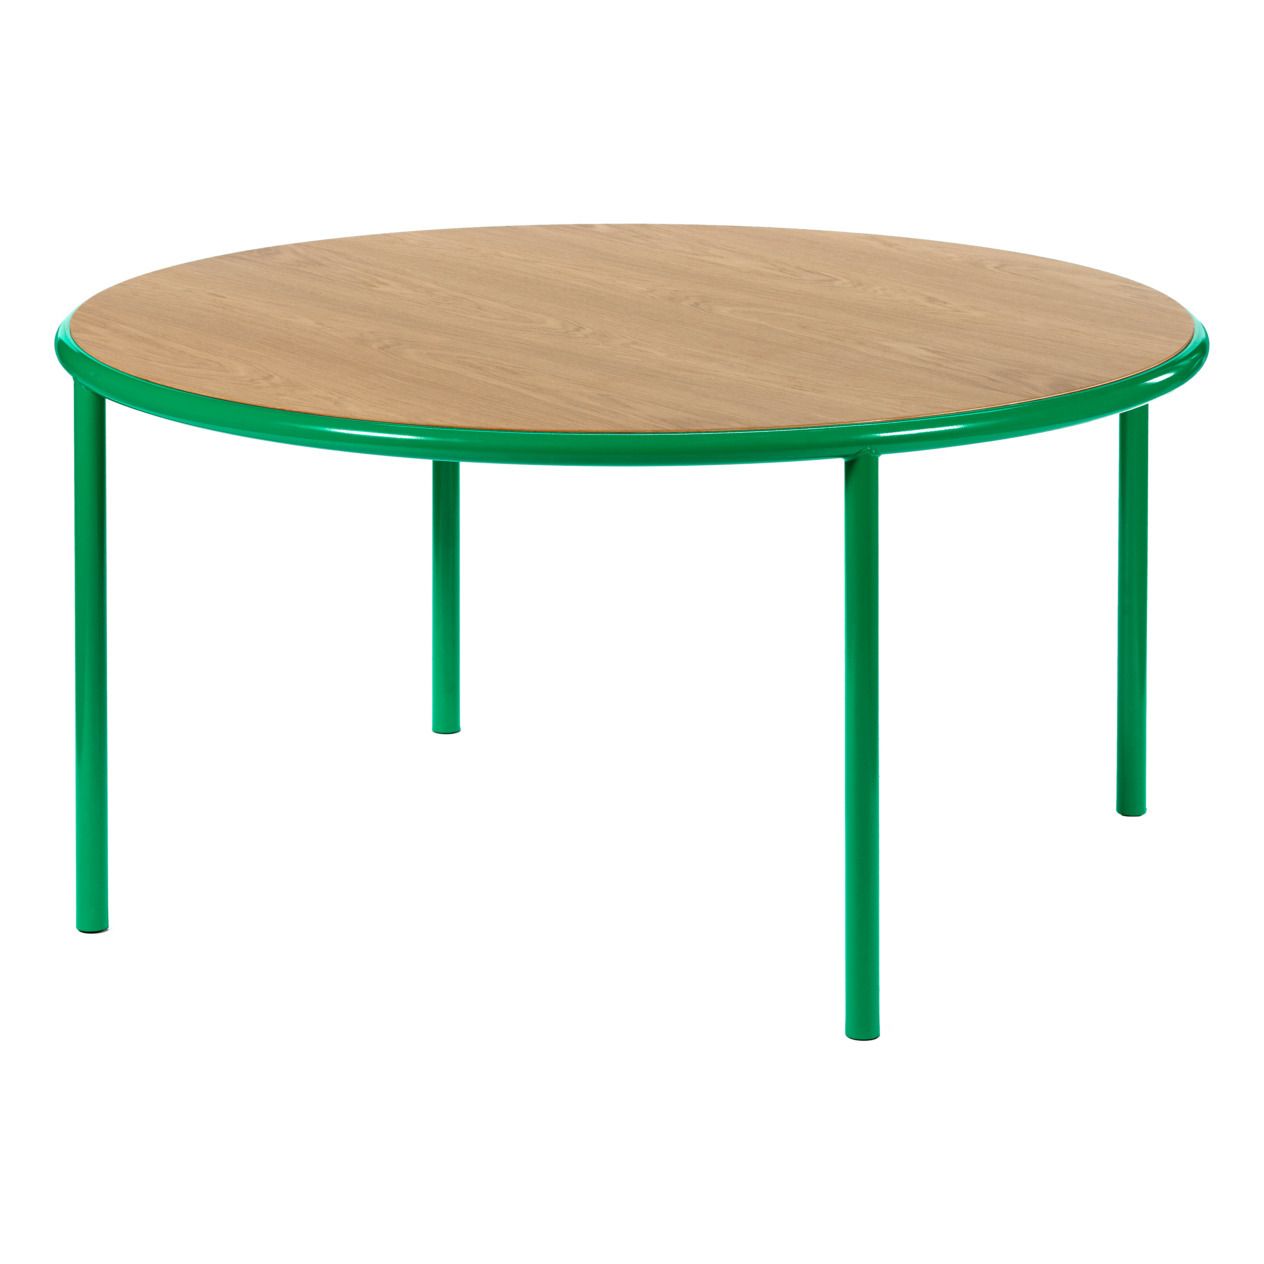 Valerie Objects - Table ronde en chêne 150 - Muller Van Severen - Vert